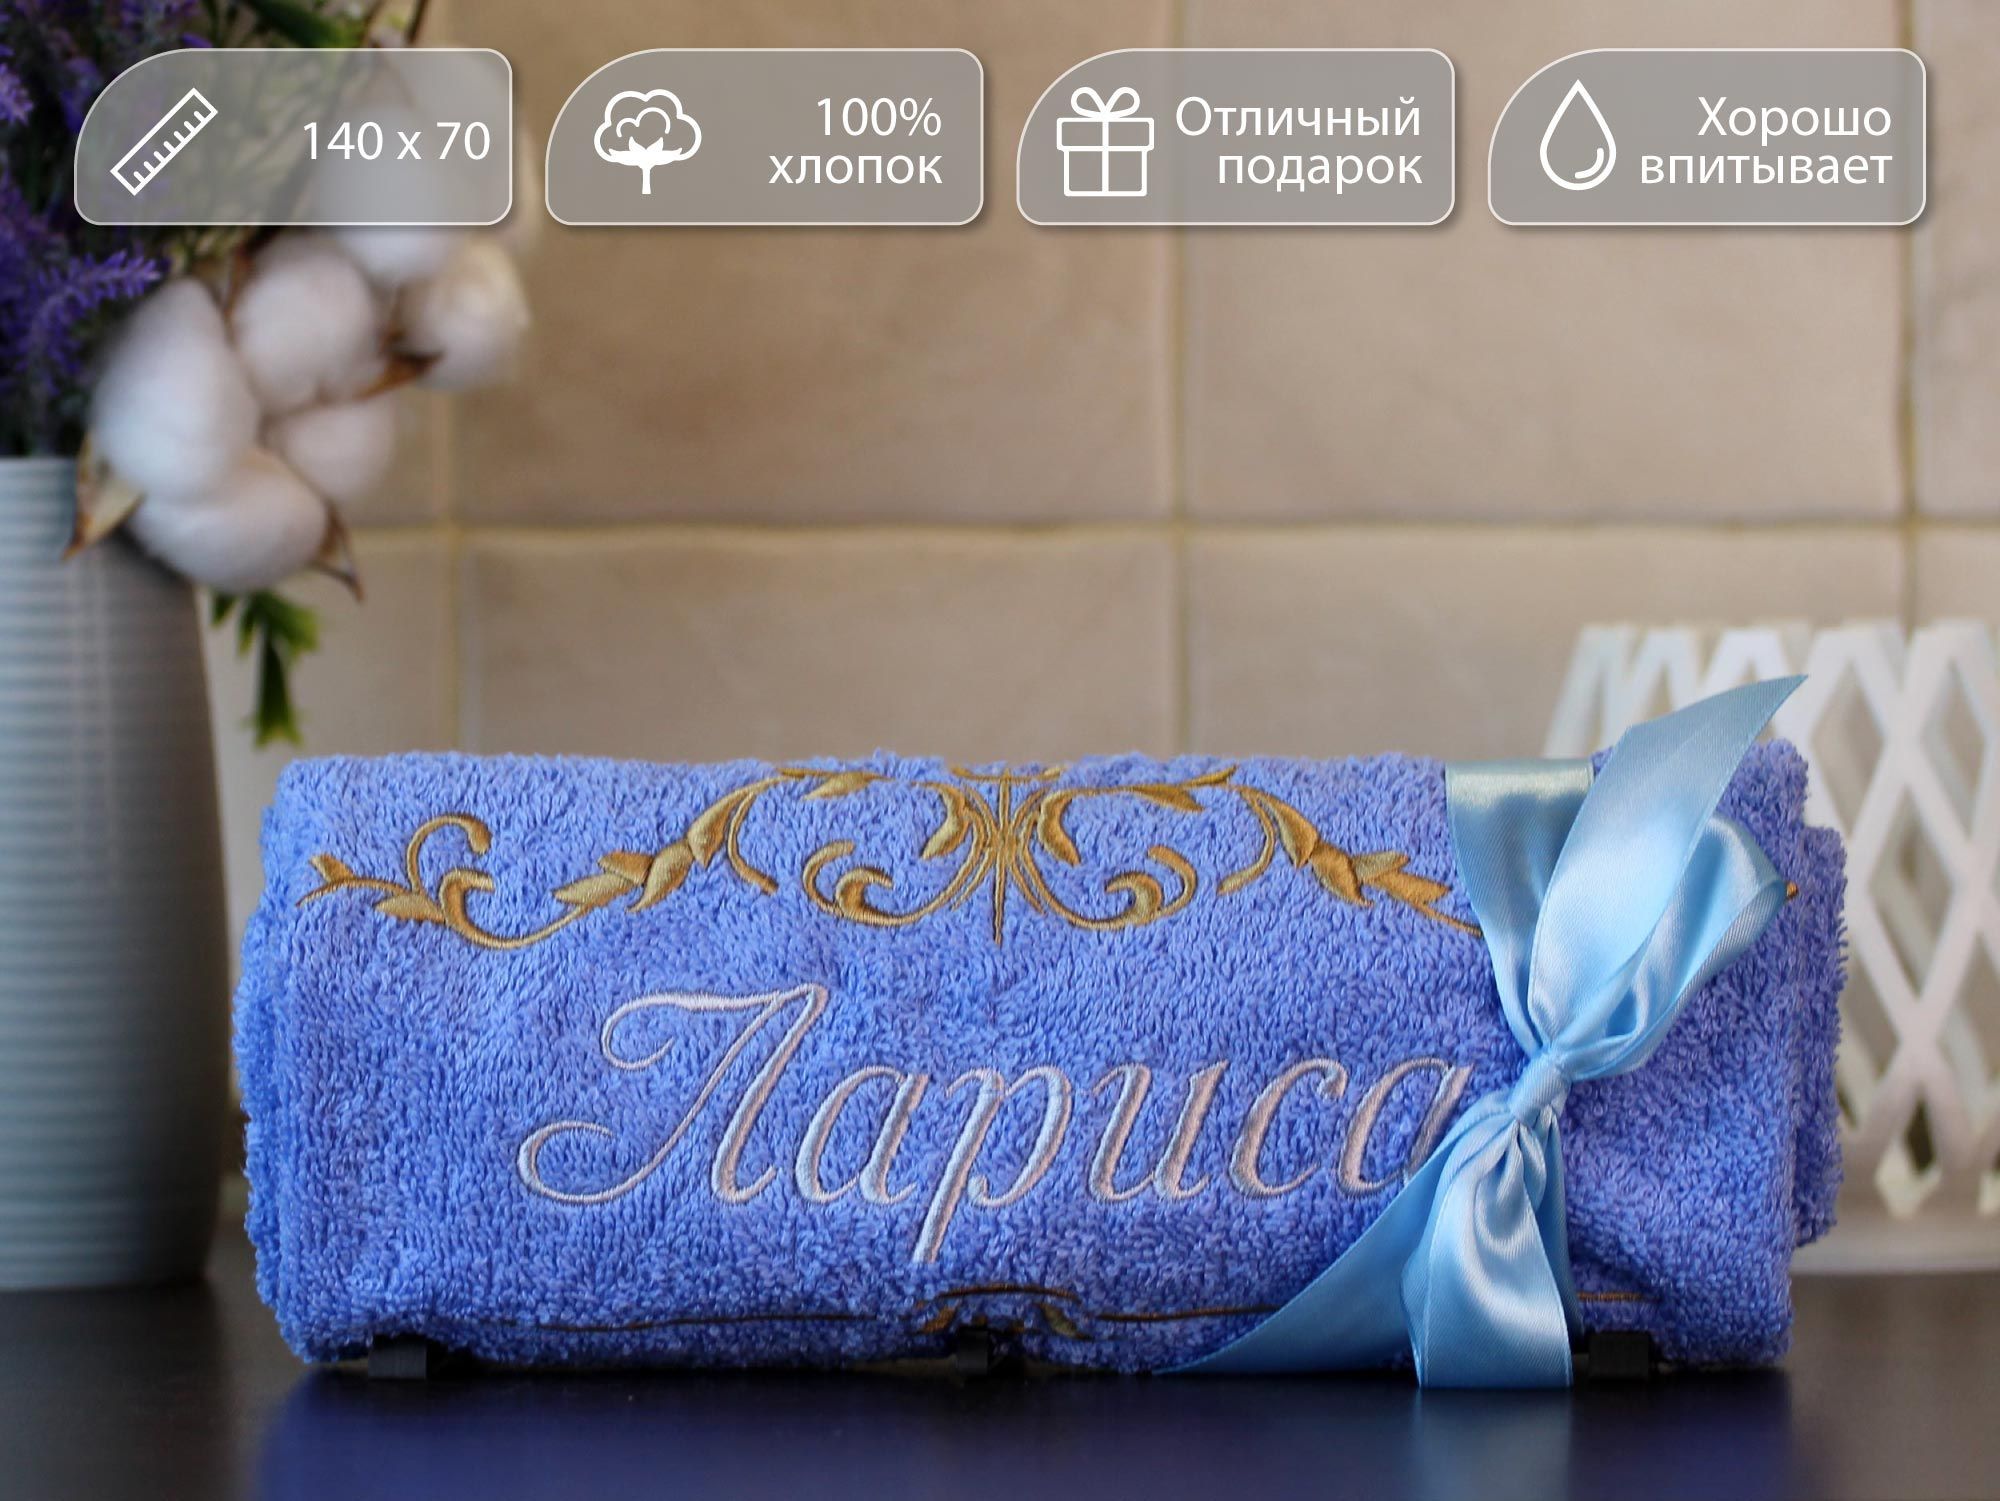 Полотенце банное, махровое, подарочное, с вышивкой имени Лариса и узором, 70*140 см, 100% хлопок